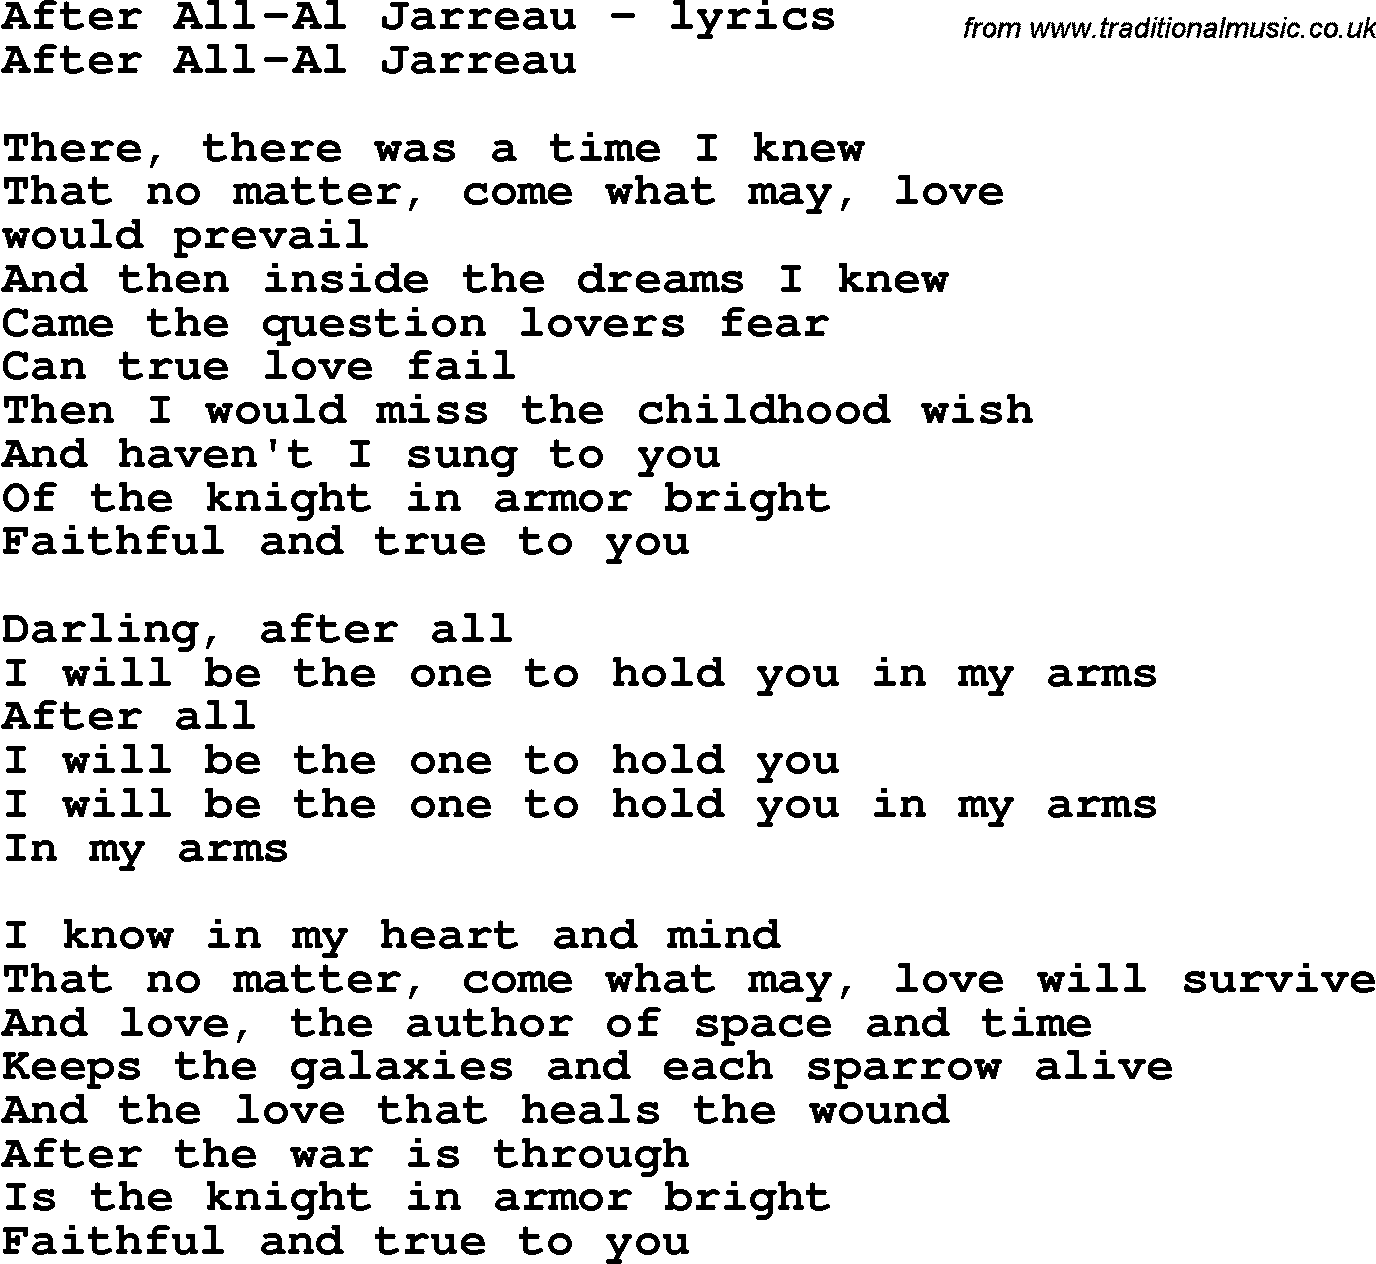 Love Song Lyrics for: After All-Al Jarreau